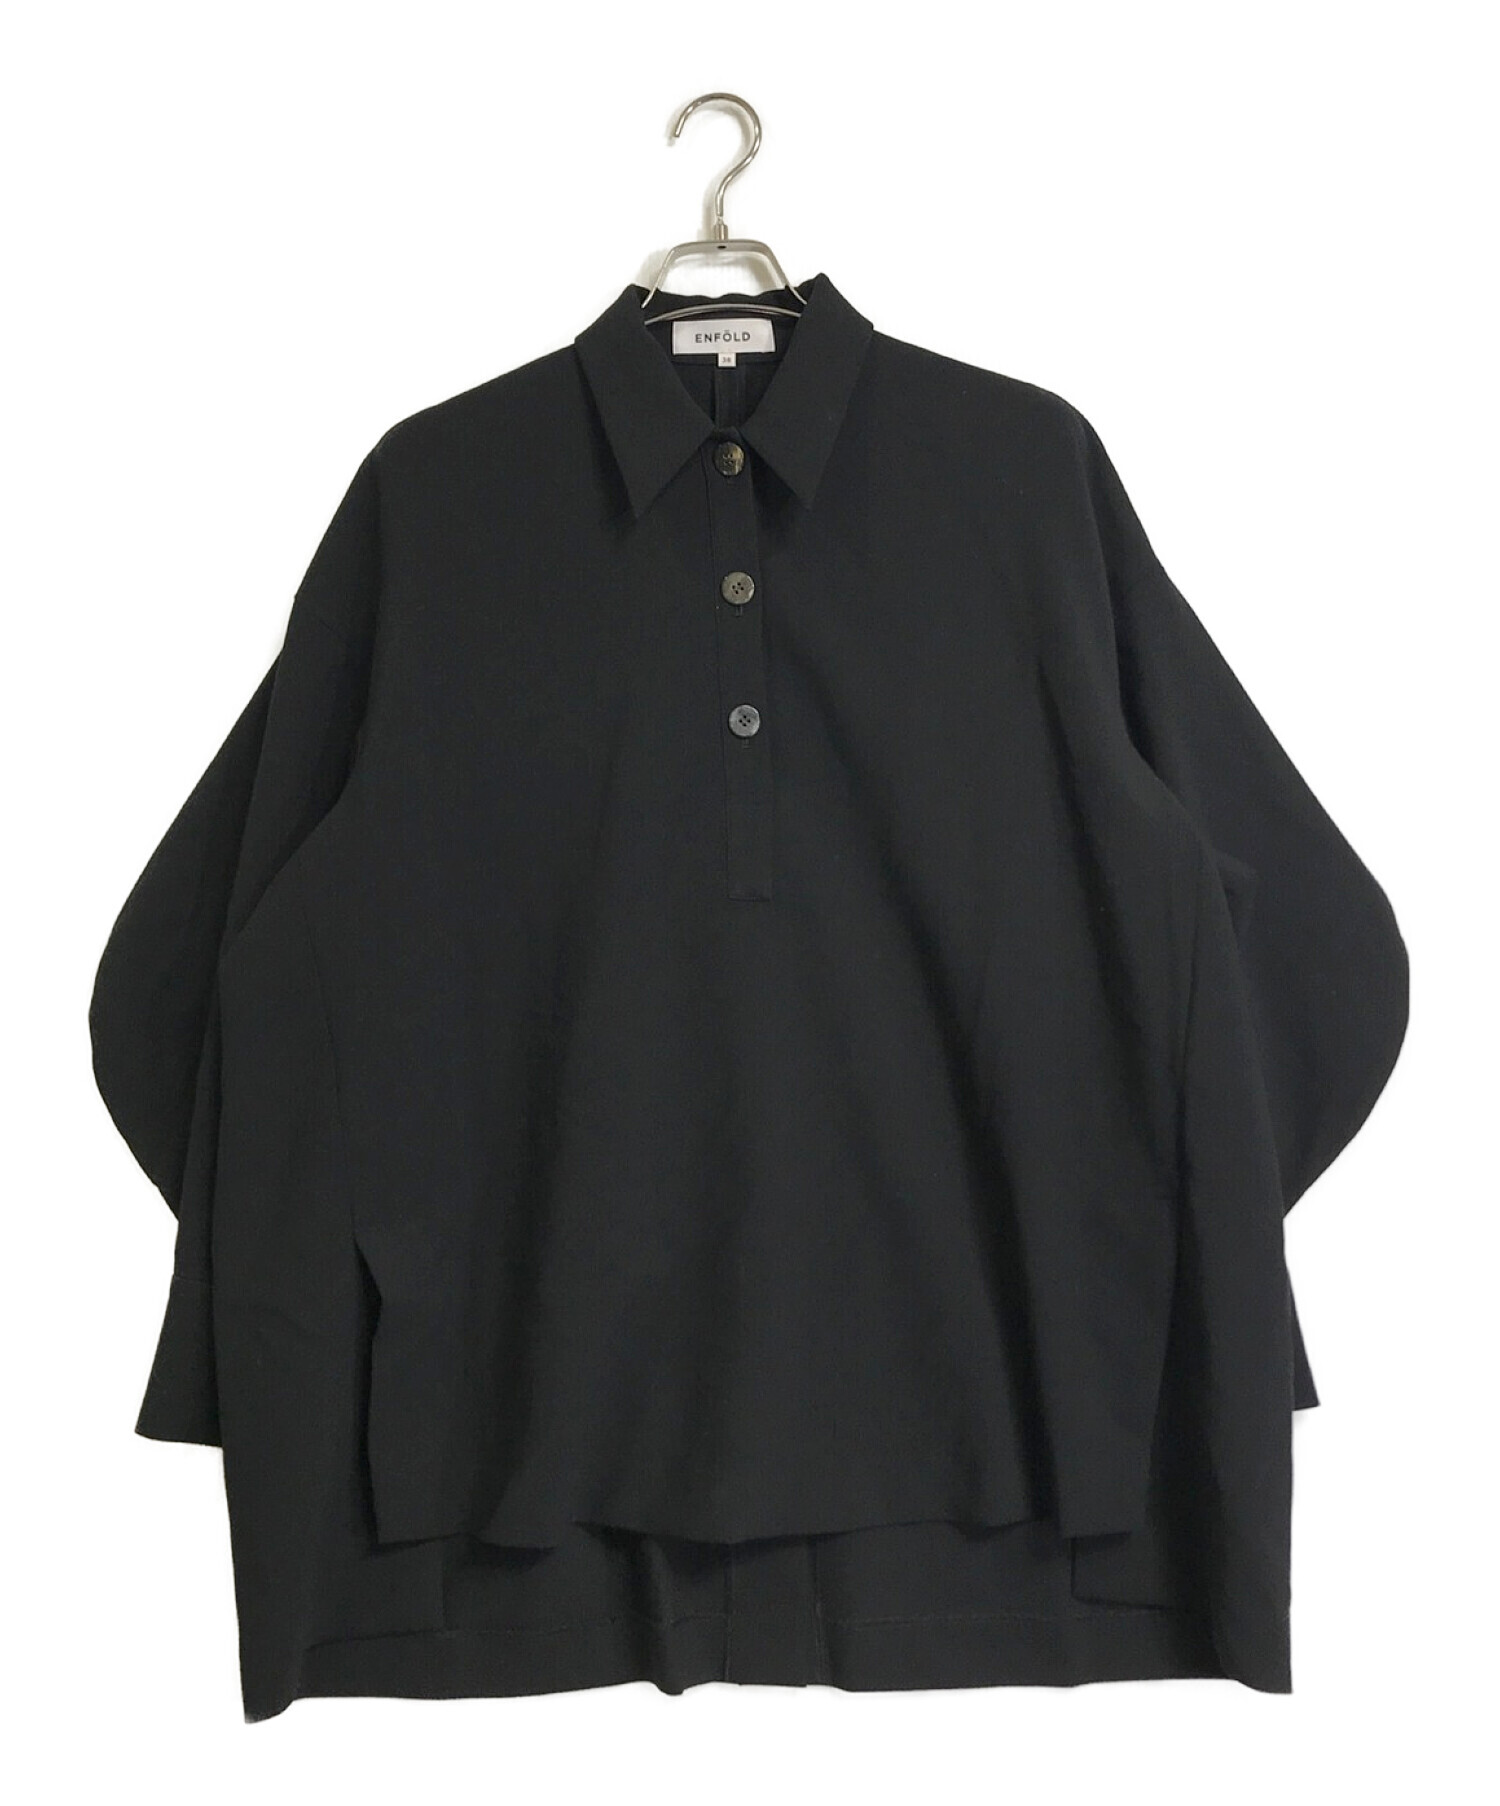 ENFOLD (エンフォルド) ダブルクロスカーブアームポロシャツ 300FS230-0330 ブラック サイズ:38